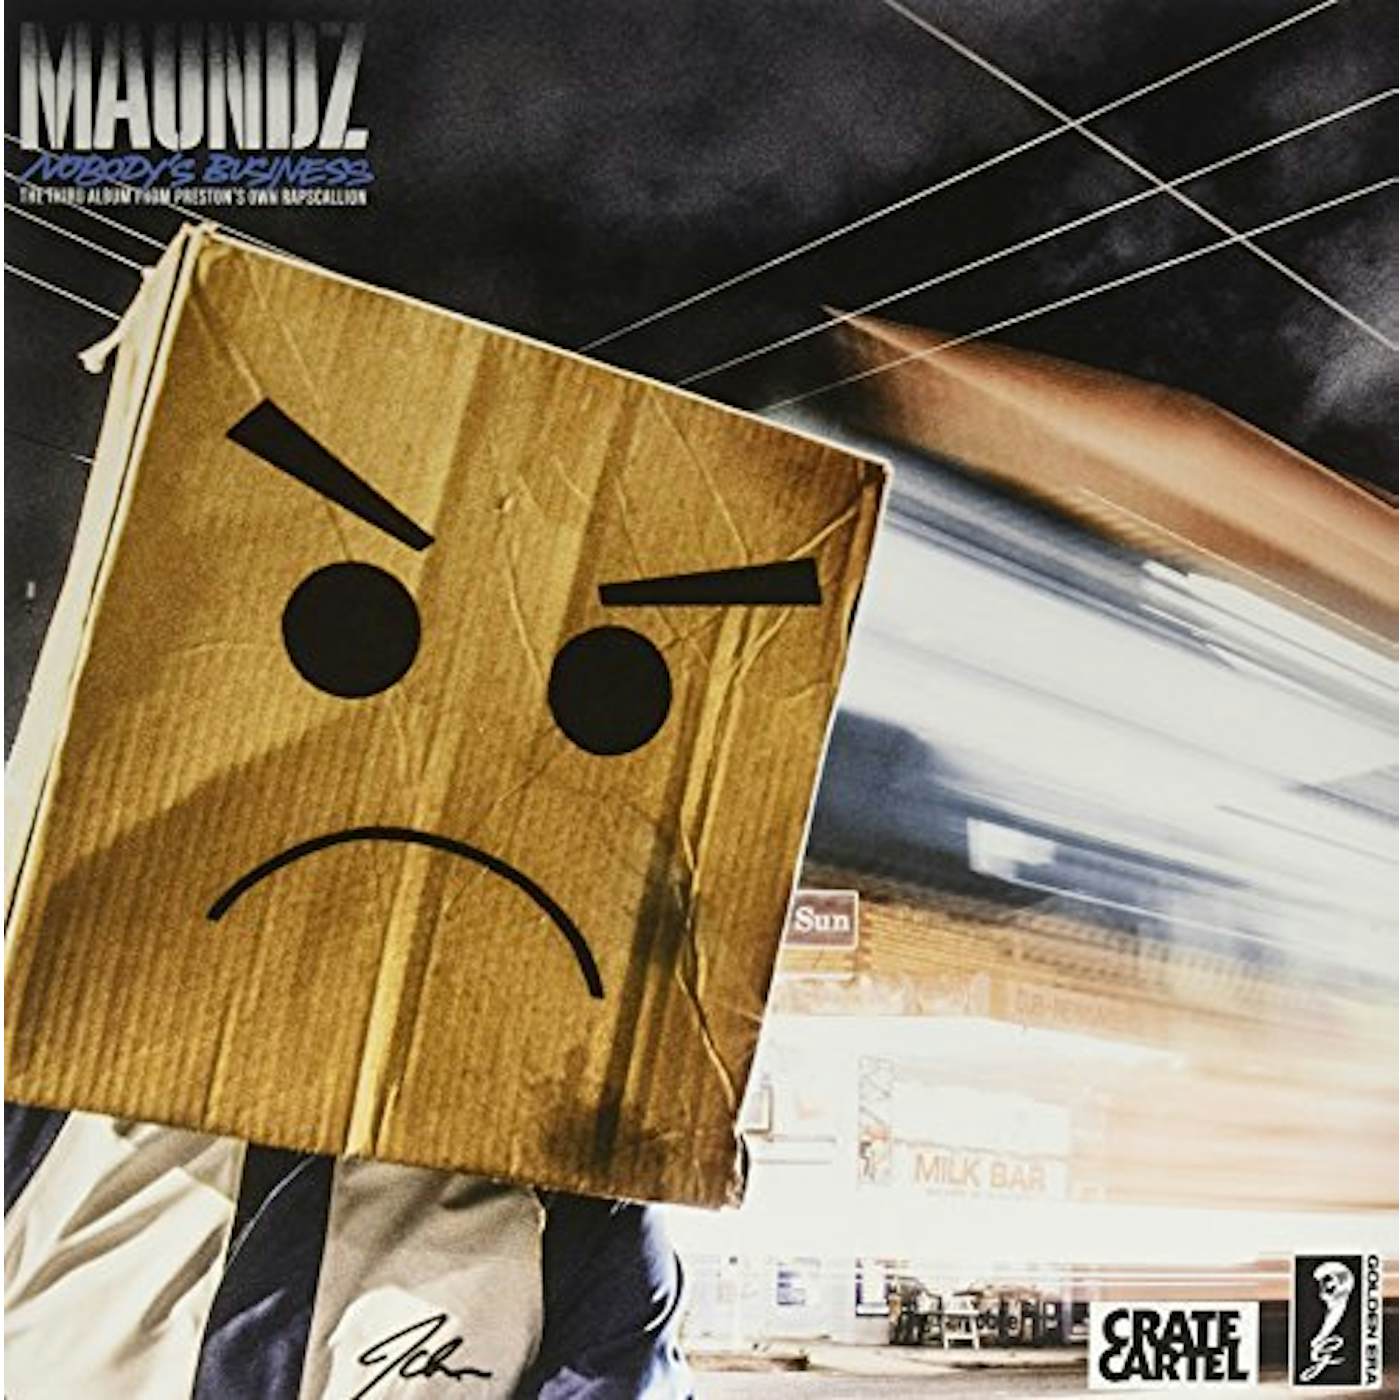 Maundz Nobody's Business Vinyl Record